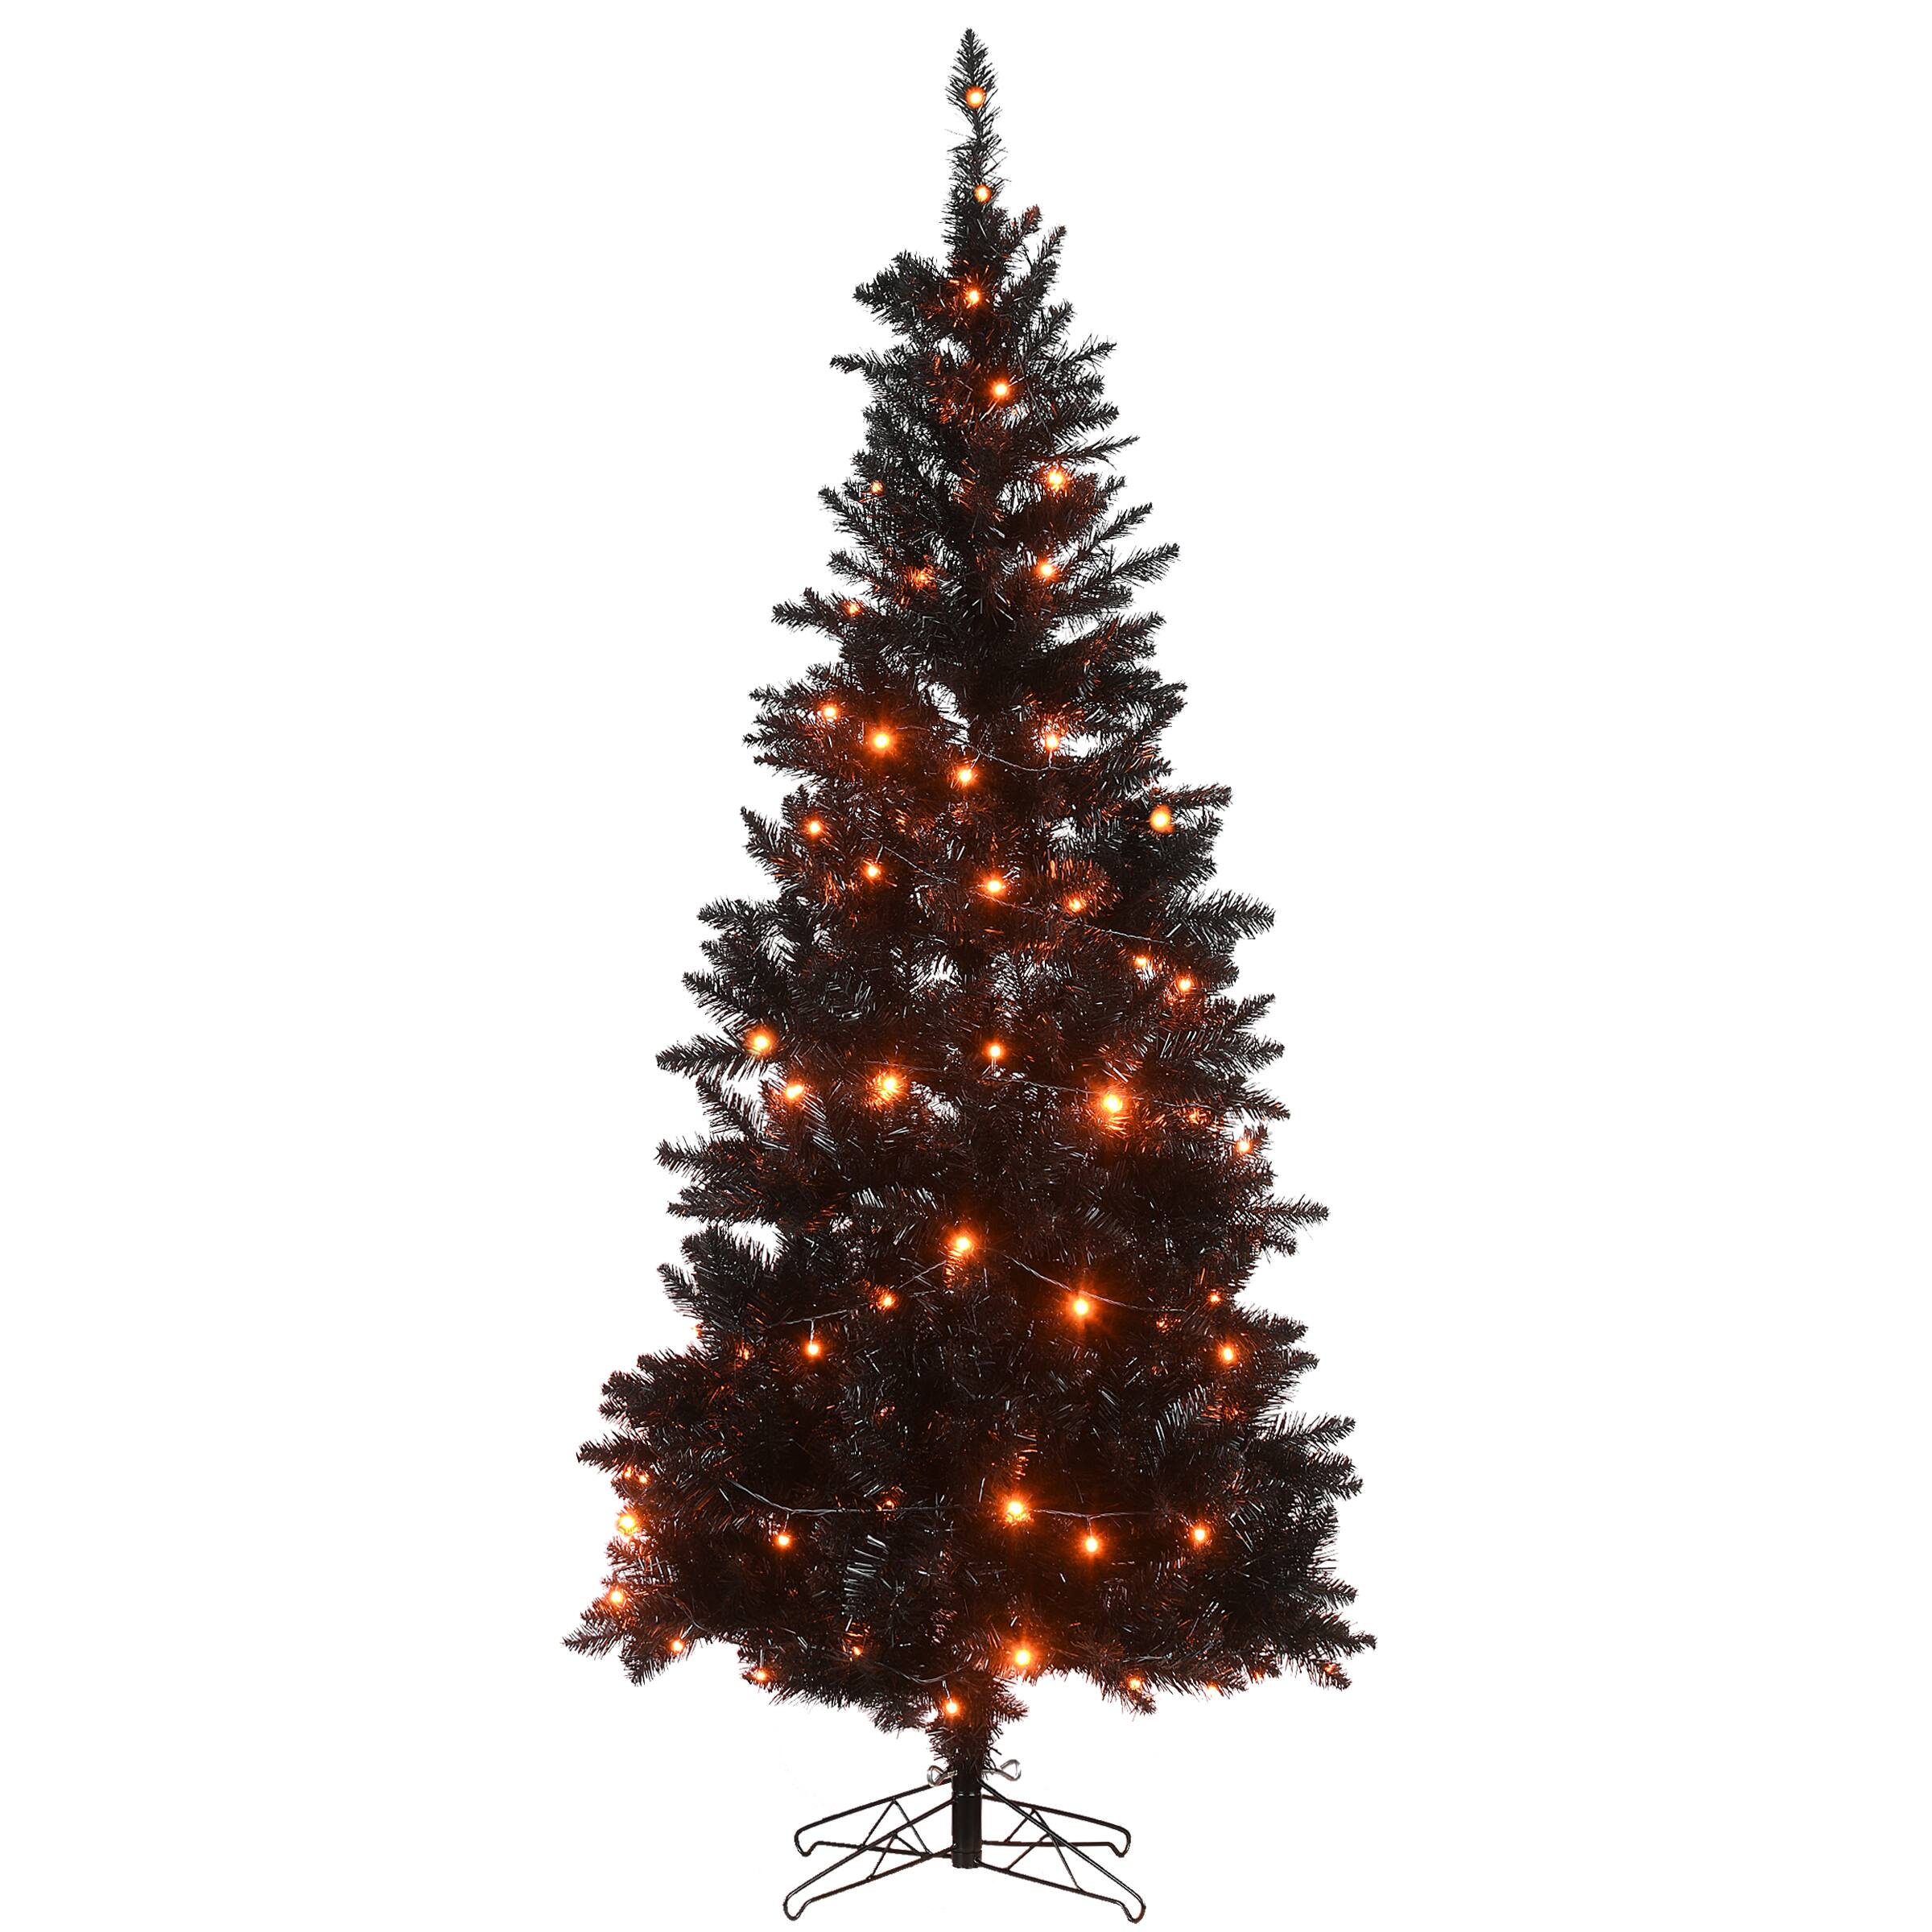 10) Christmas Halloween Black Orange Black Plastic Tree Ornaments